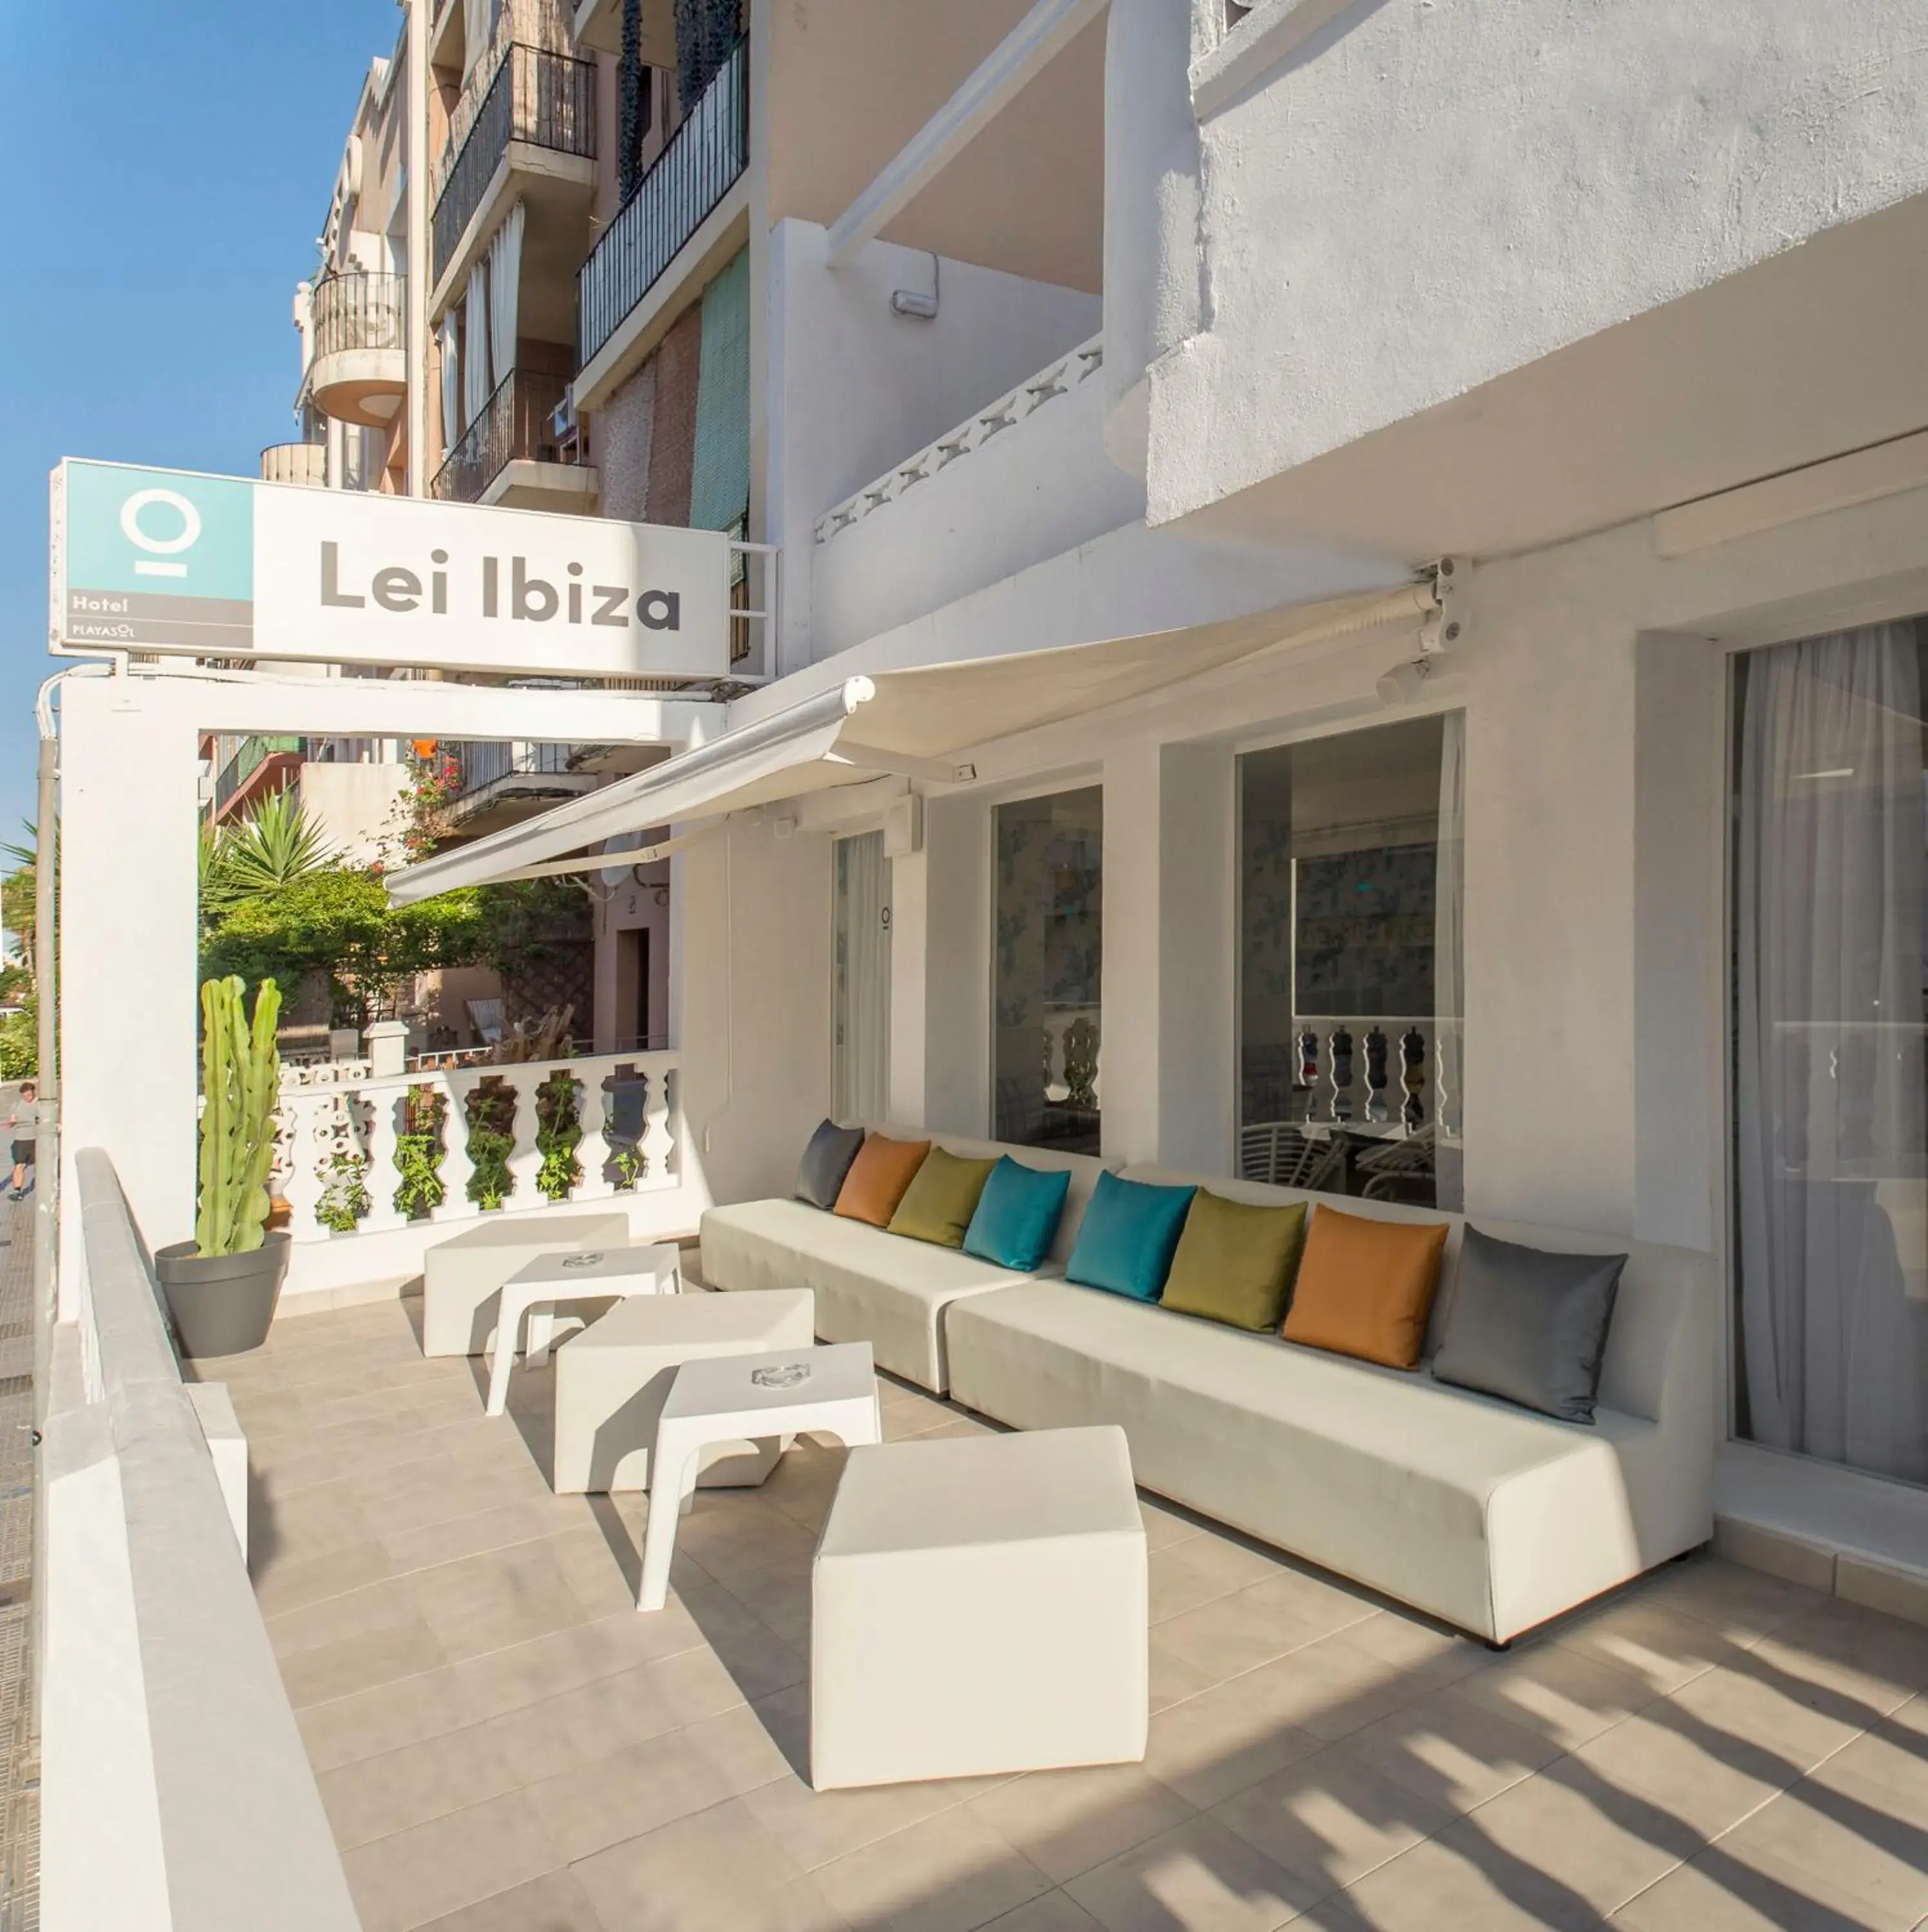 Facade/entrance in Hotel Vibra Lei Ibiza